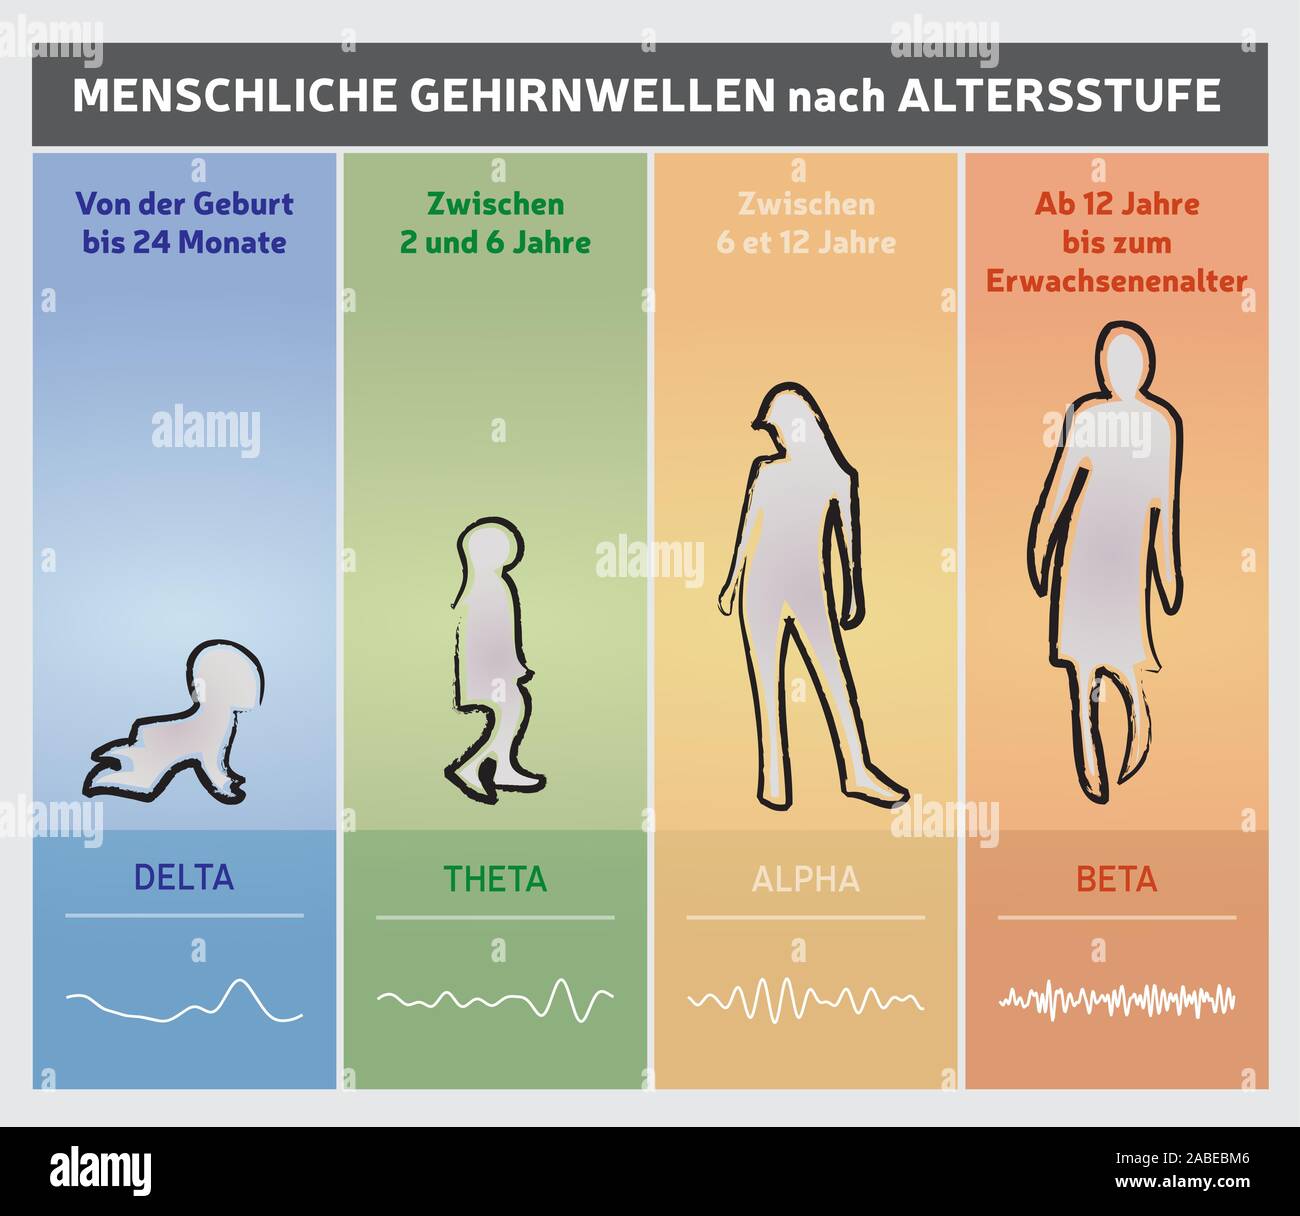 Menschliche Gehirnwellen durch Alter Diagramm Diagramm - Menschen Silhouetten - Deutsche Sprache - Mehrfarbig Stock Vektor